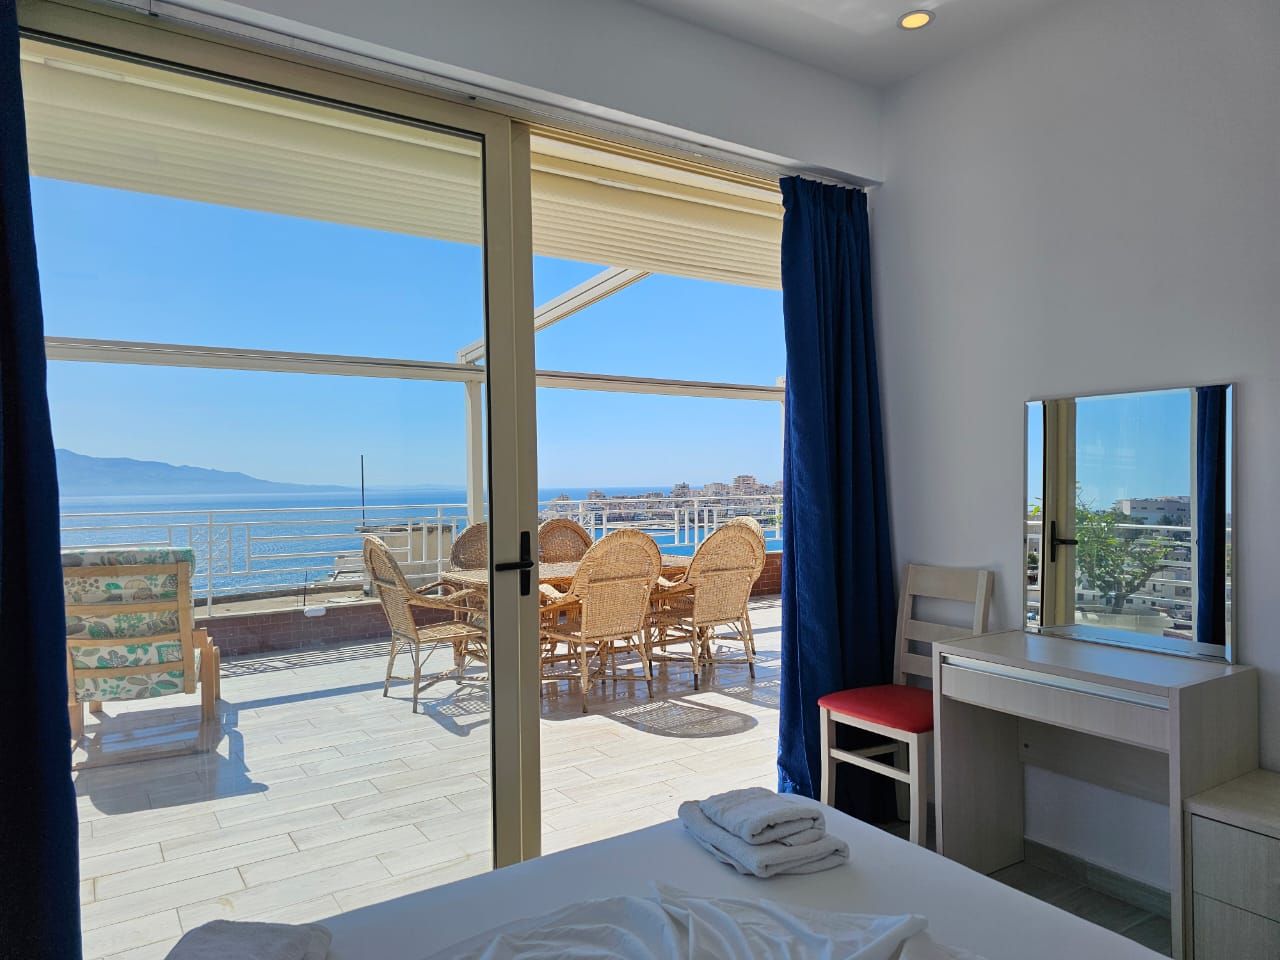 Immobili In Albania A Saranda in vendita con due camere da letto in una residenza moderna con splendida vista panoramica sul mare